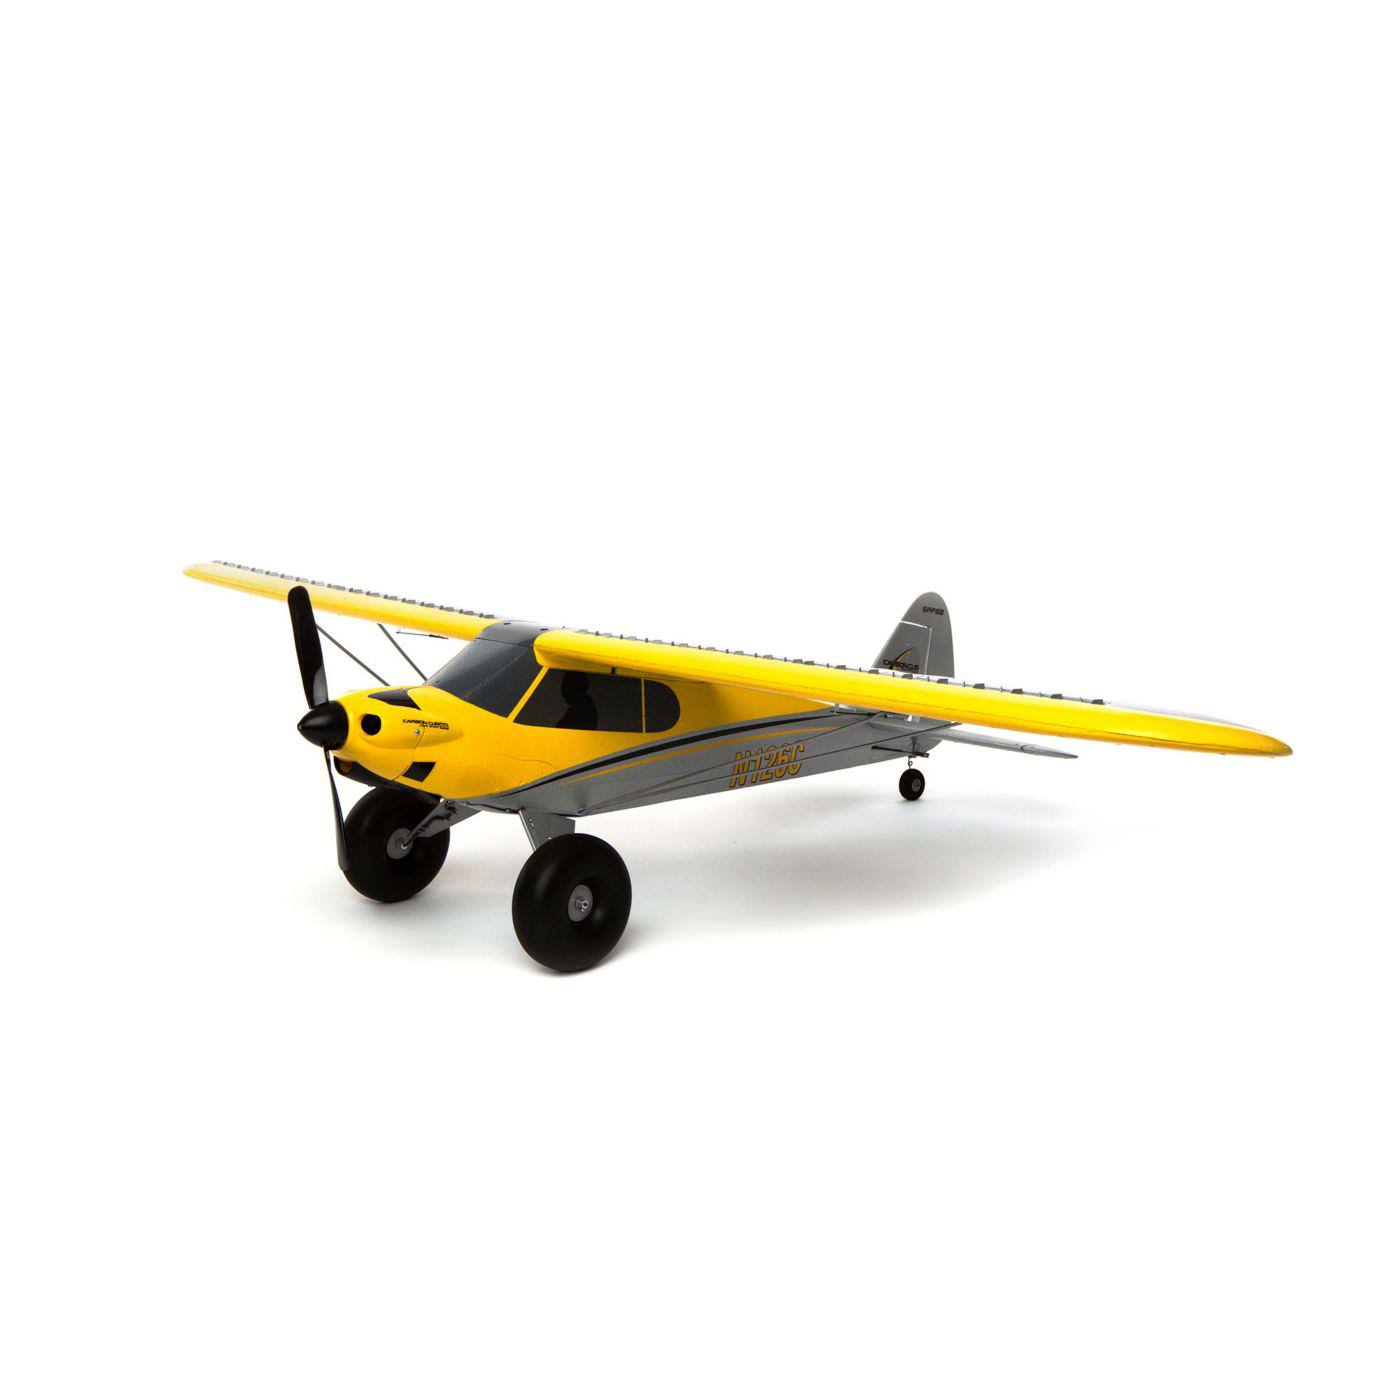 Hobbyzone Carbon Cub S2 RC Plane, RTF, Mode 2